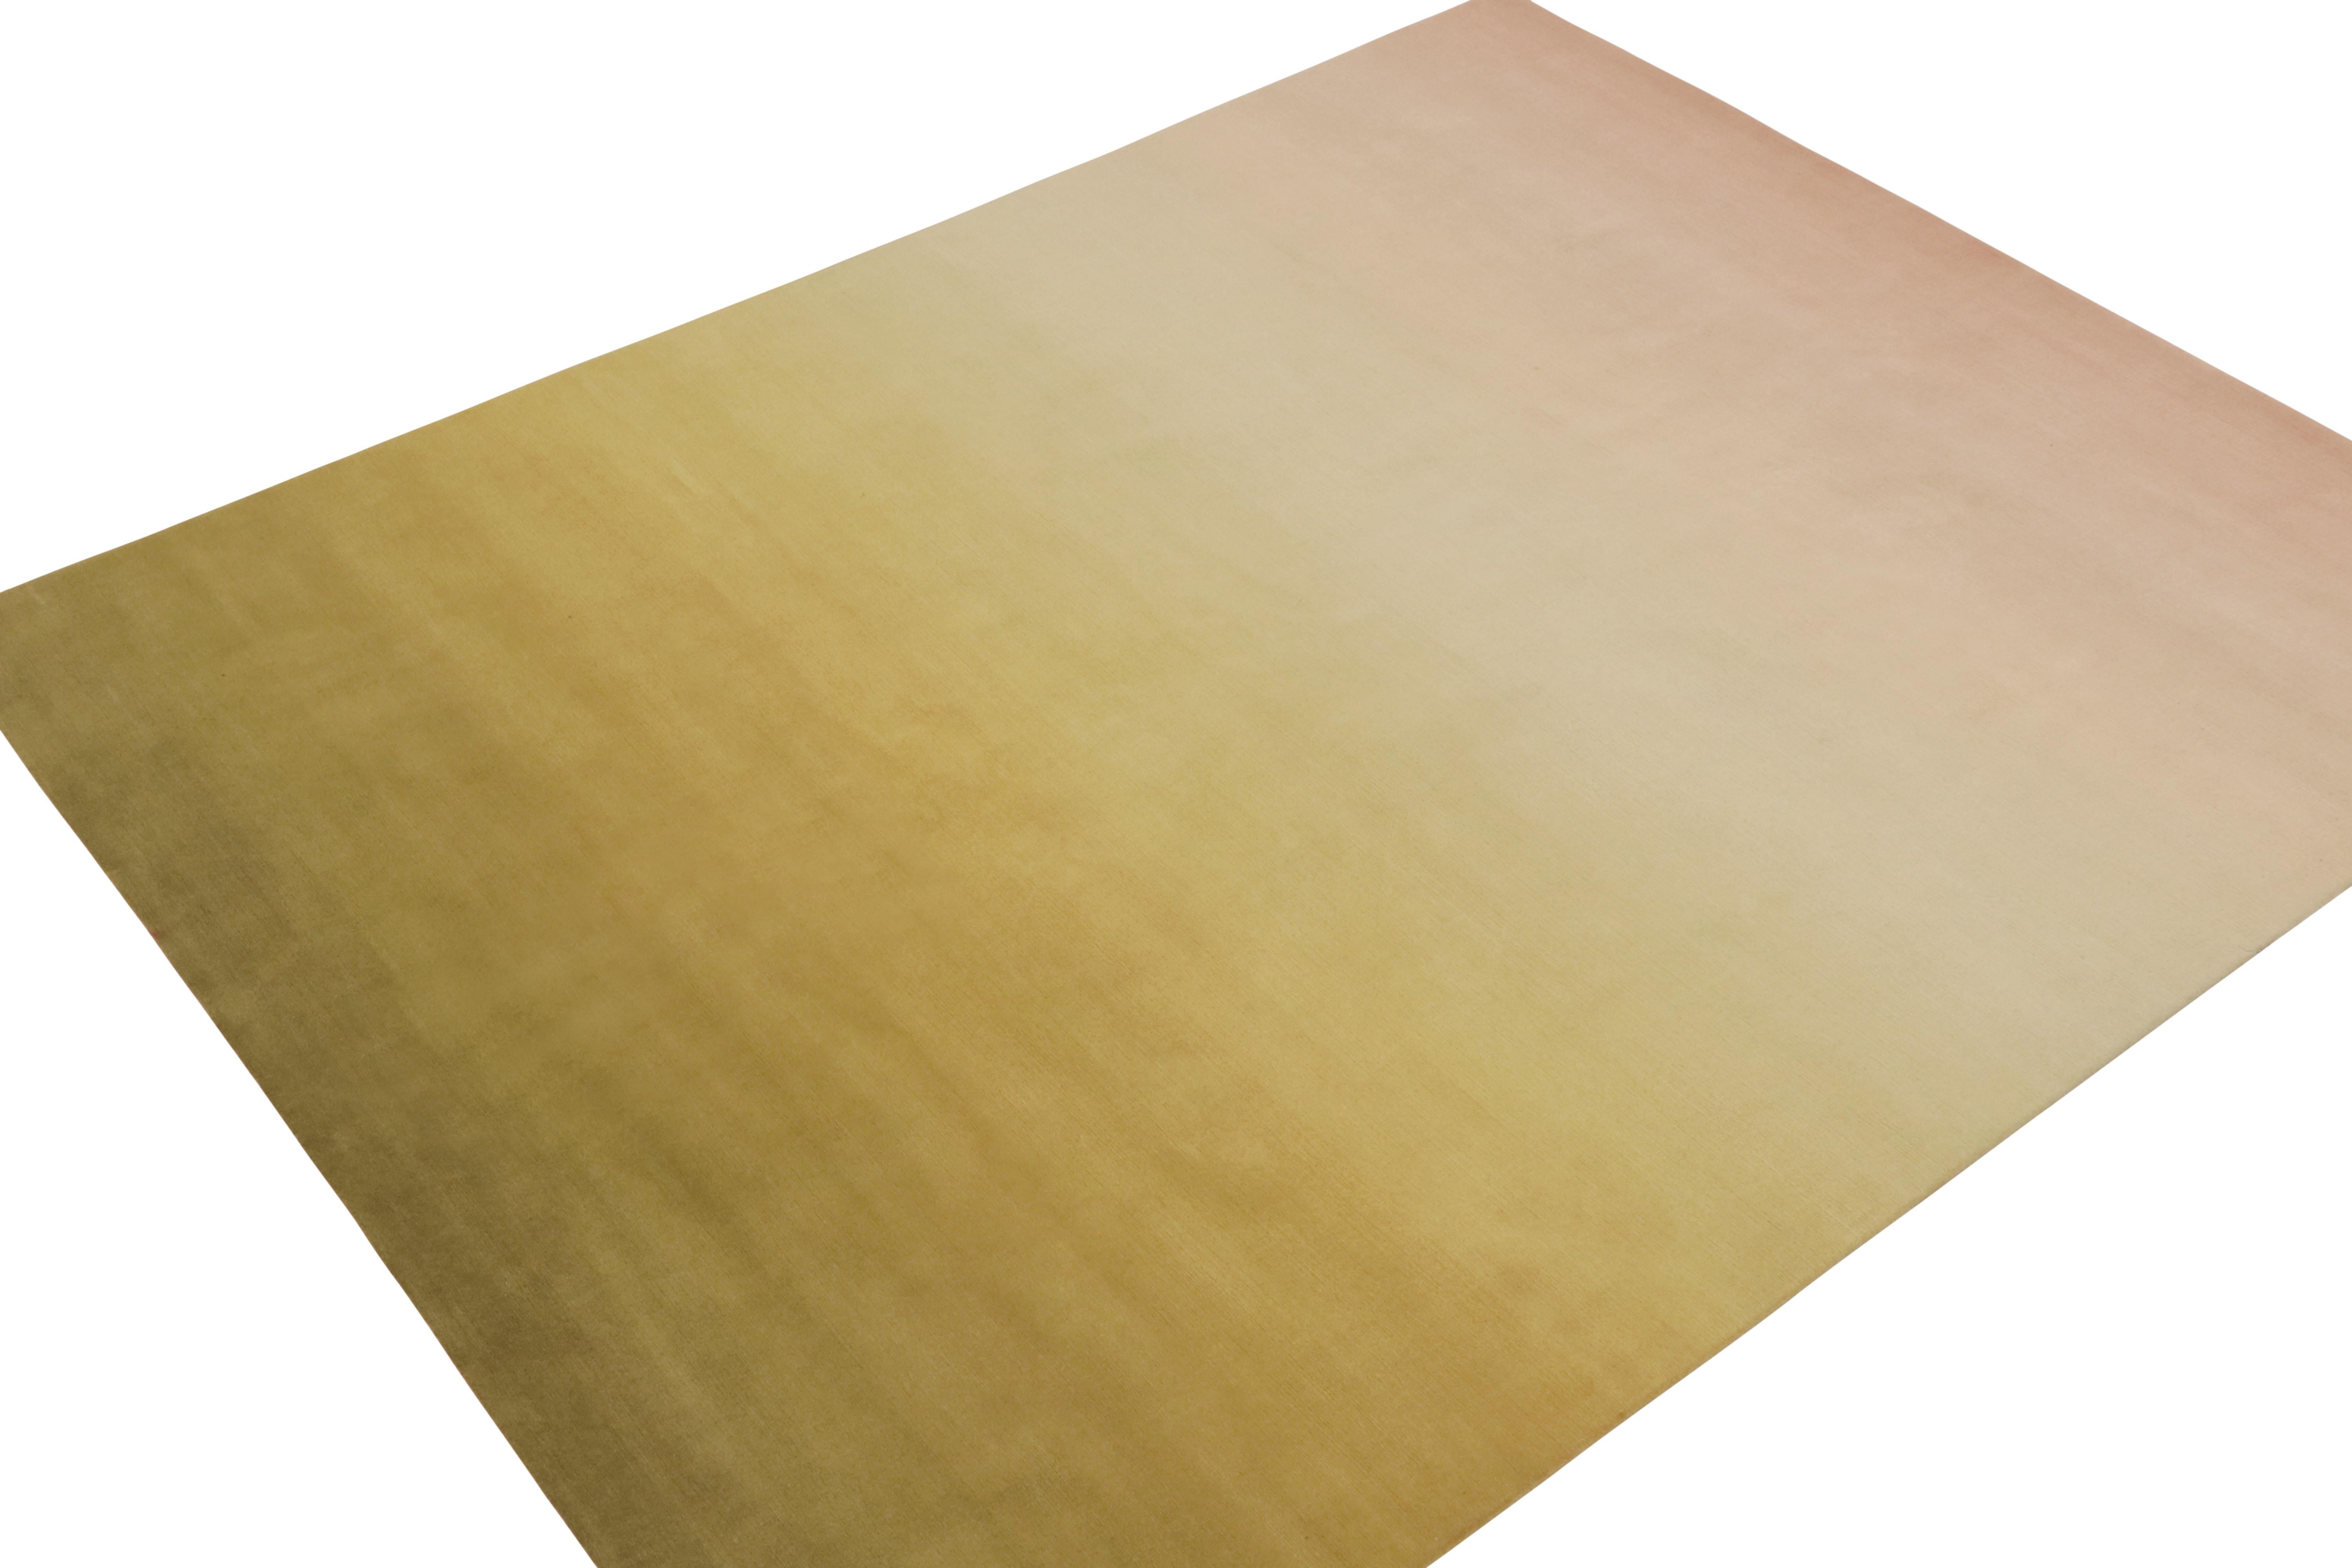 Rug & Kilim präsentiert einen 8x10 großen modernen Teppich in einem warmen Ombre-Design mit unifarbenen Farbverläufen in Chartreuse- und Rosatönen. Handgeknüpft aus Wolle und Seide, liegt die Kunst darin, wie subtil die Farbverschiebungen auf dem